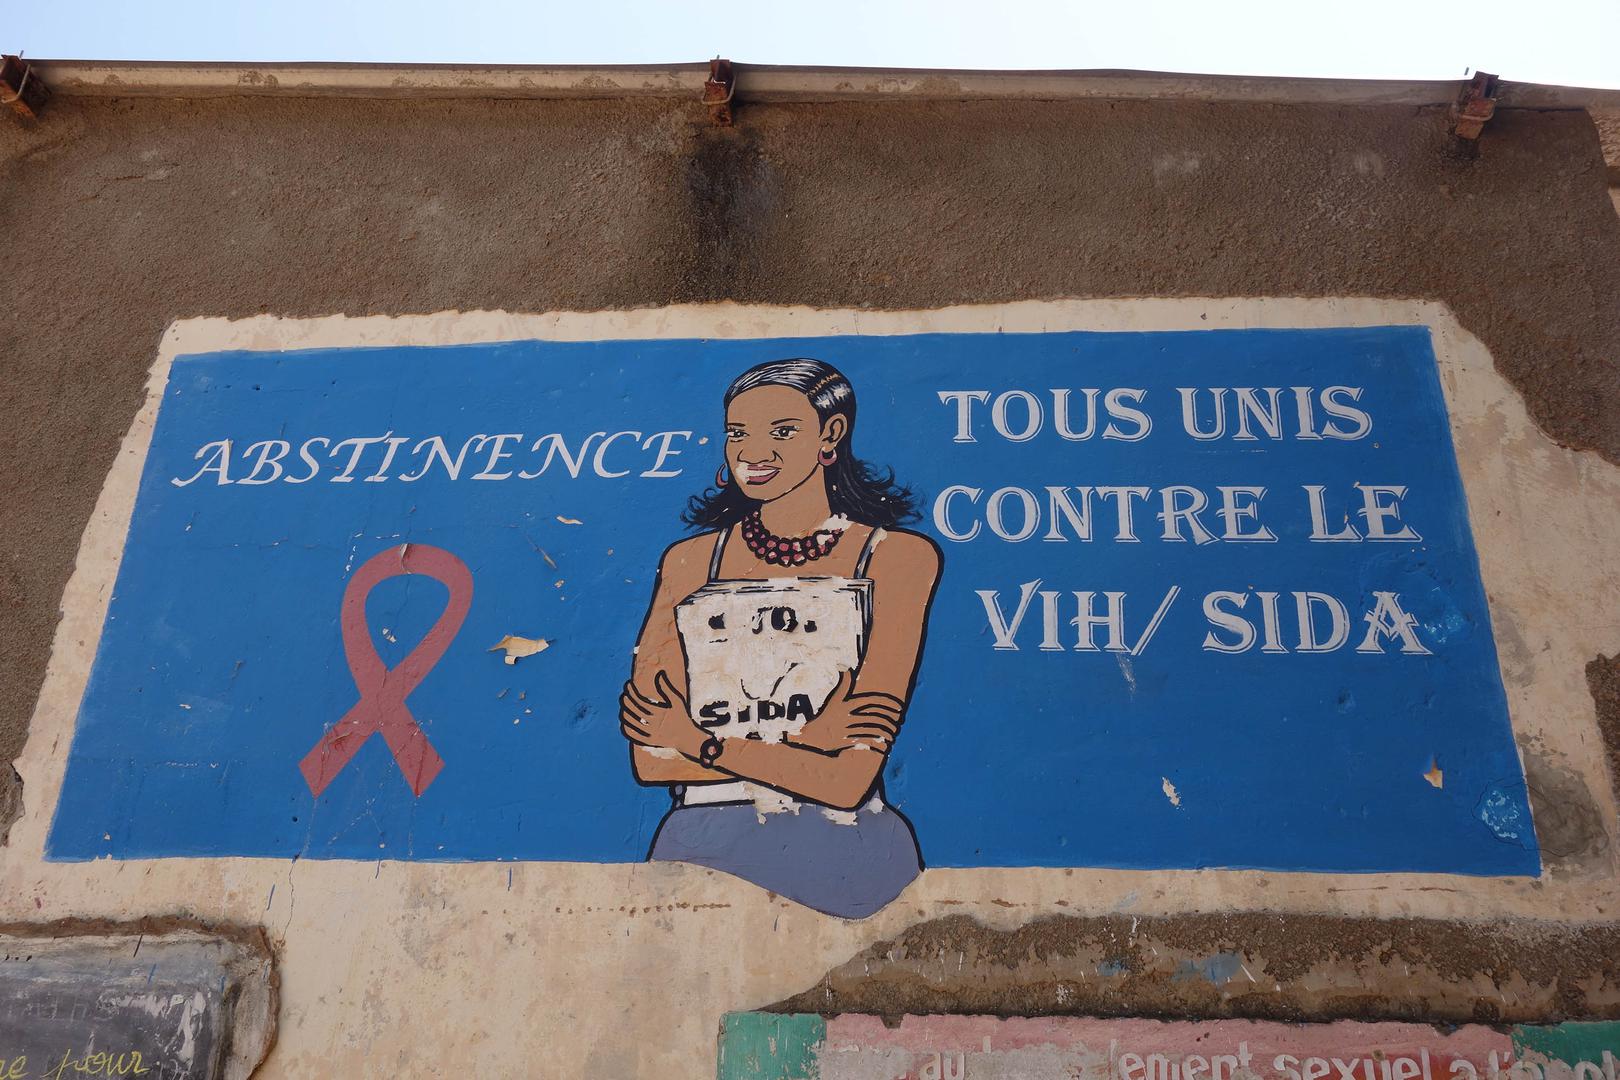 Une peinture murale dans une école de premier cycle de l’enseignement secondaire de la ville de Sédhiou, dans le sud du Sénégal, prône l’abstinence pour lutter contre le VIH/SIDA. 